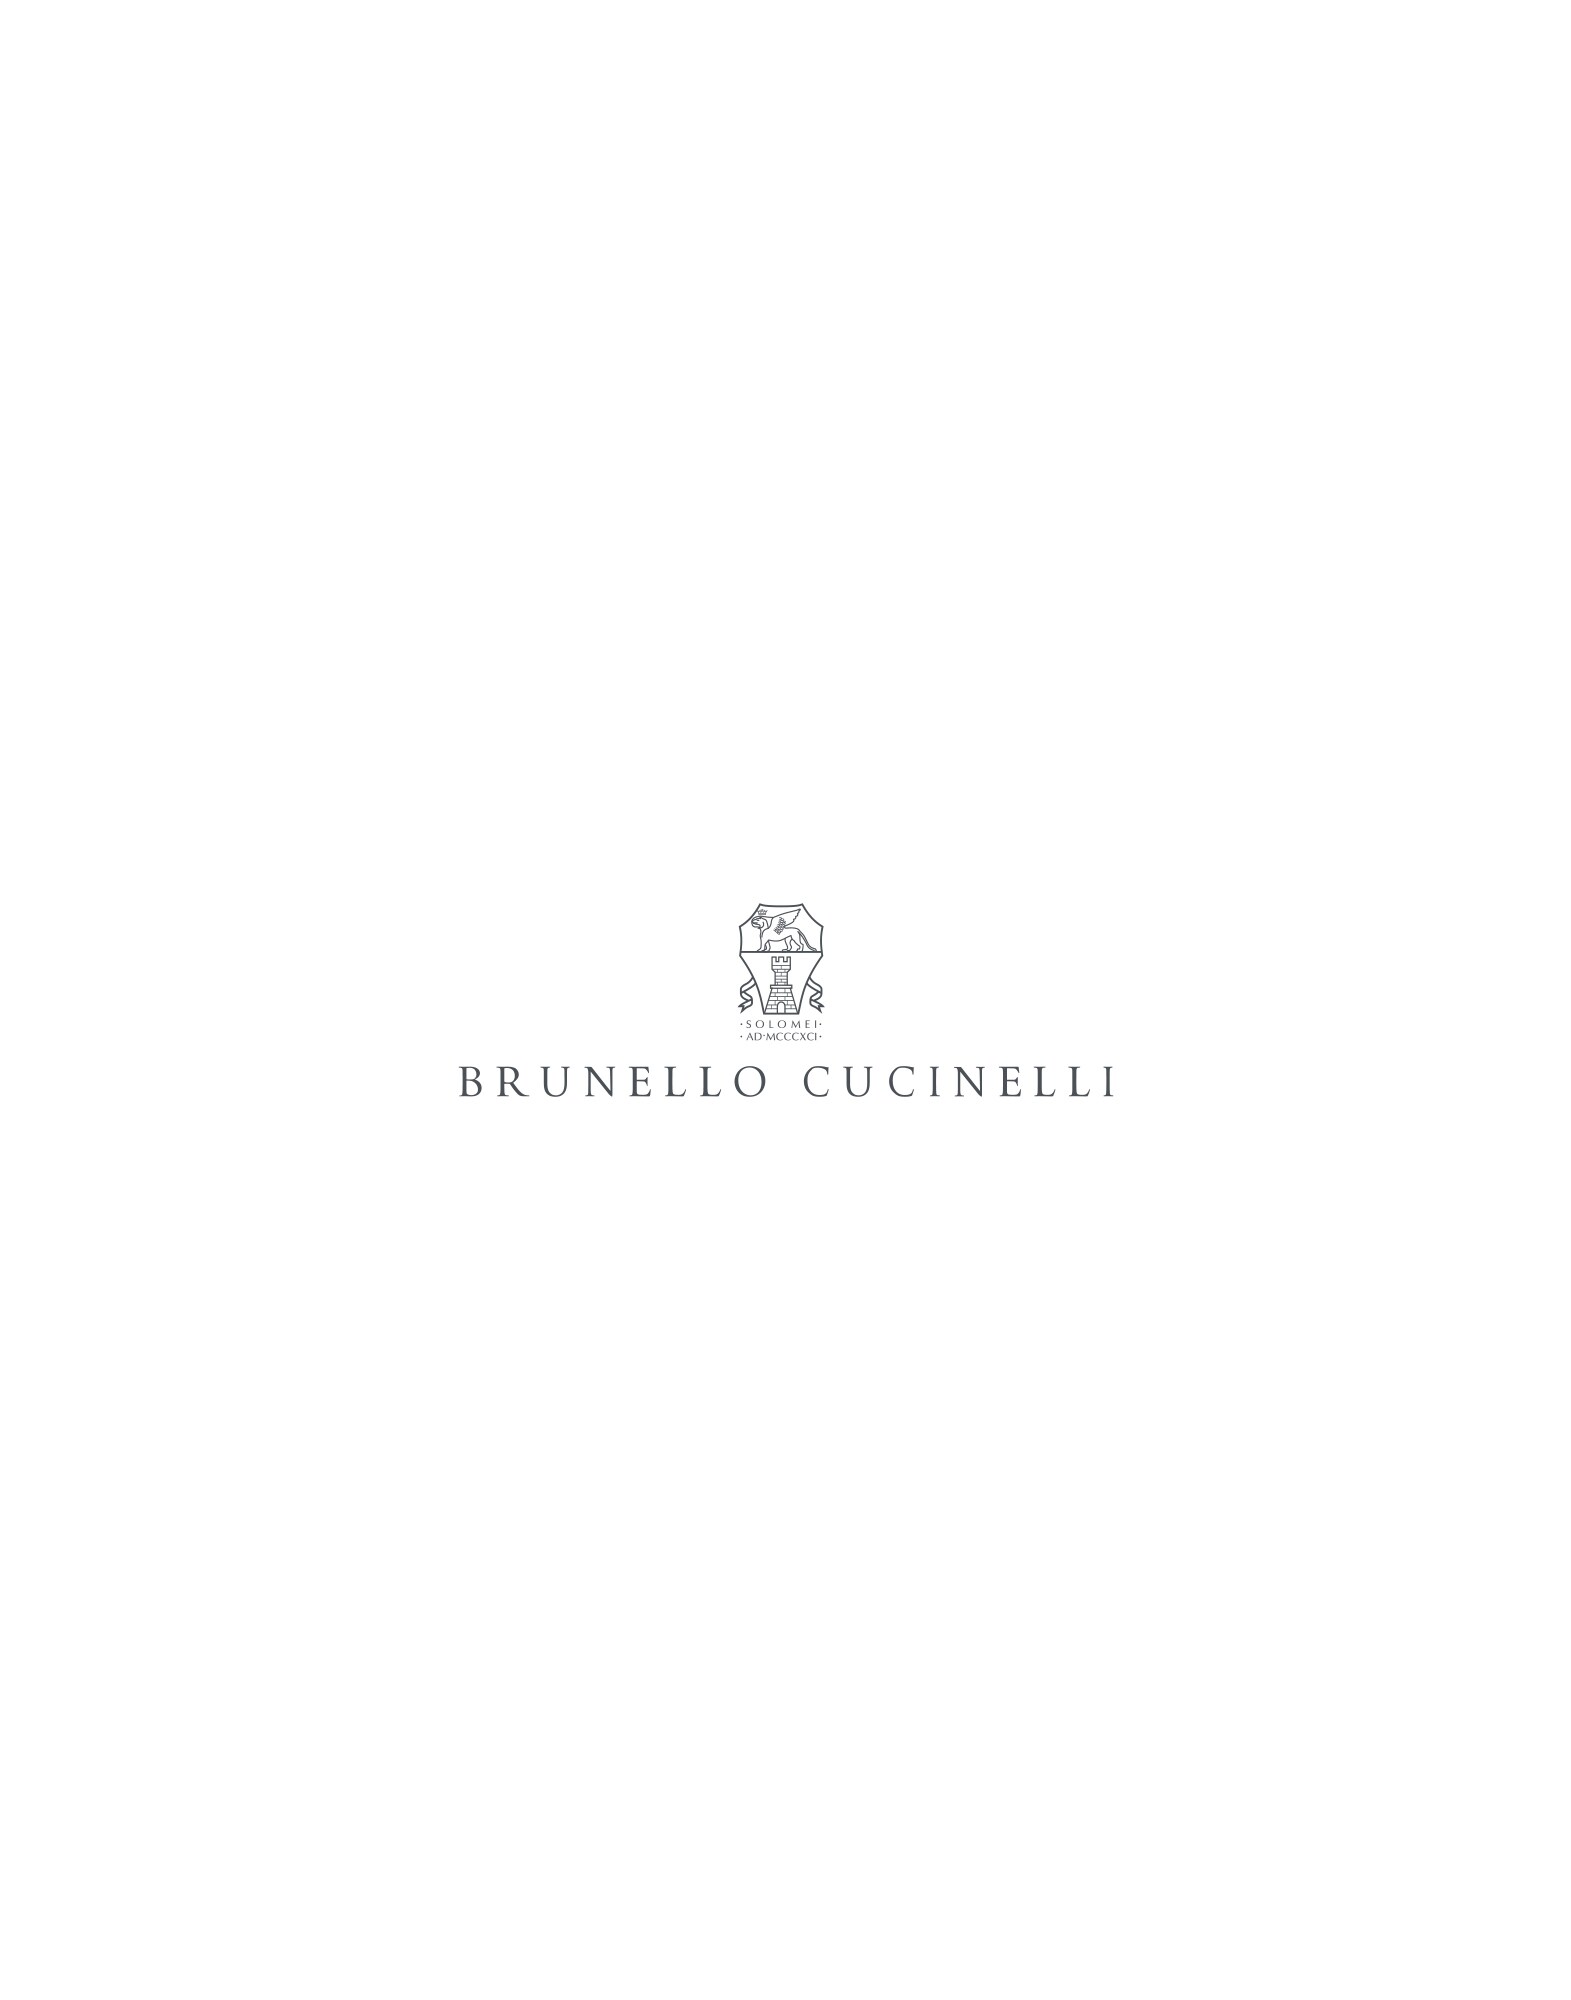 Mr. Brunello - Full look